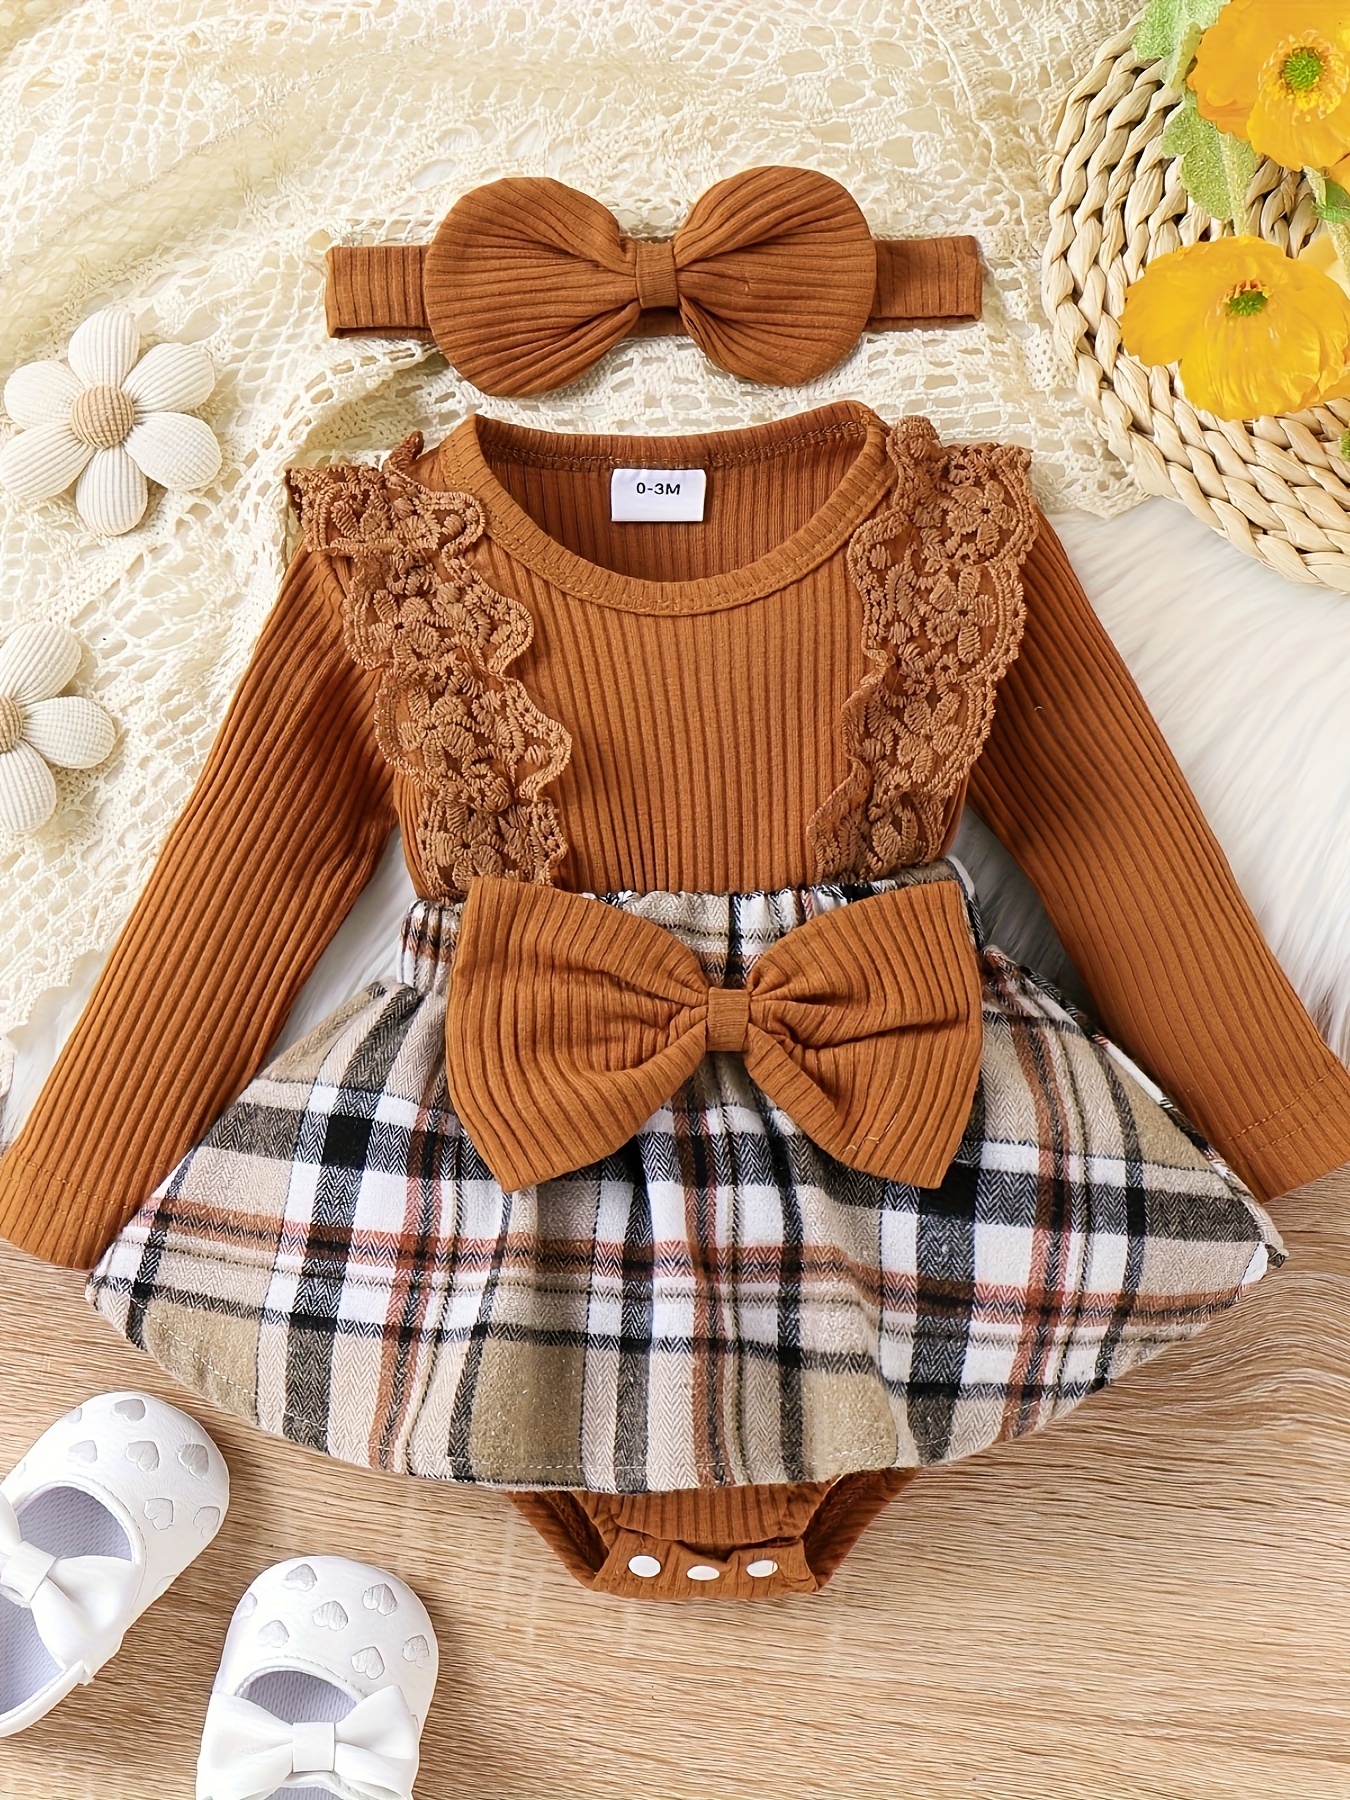 Comprar moda Bebé Niña (0-12 meses) en